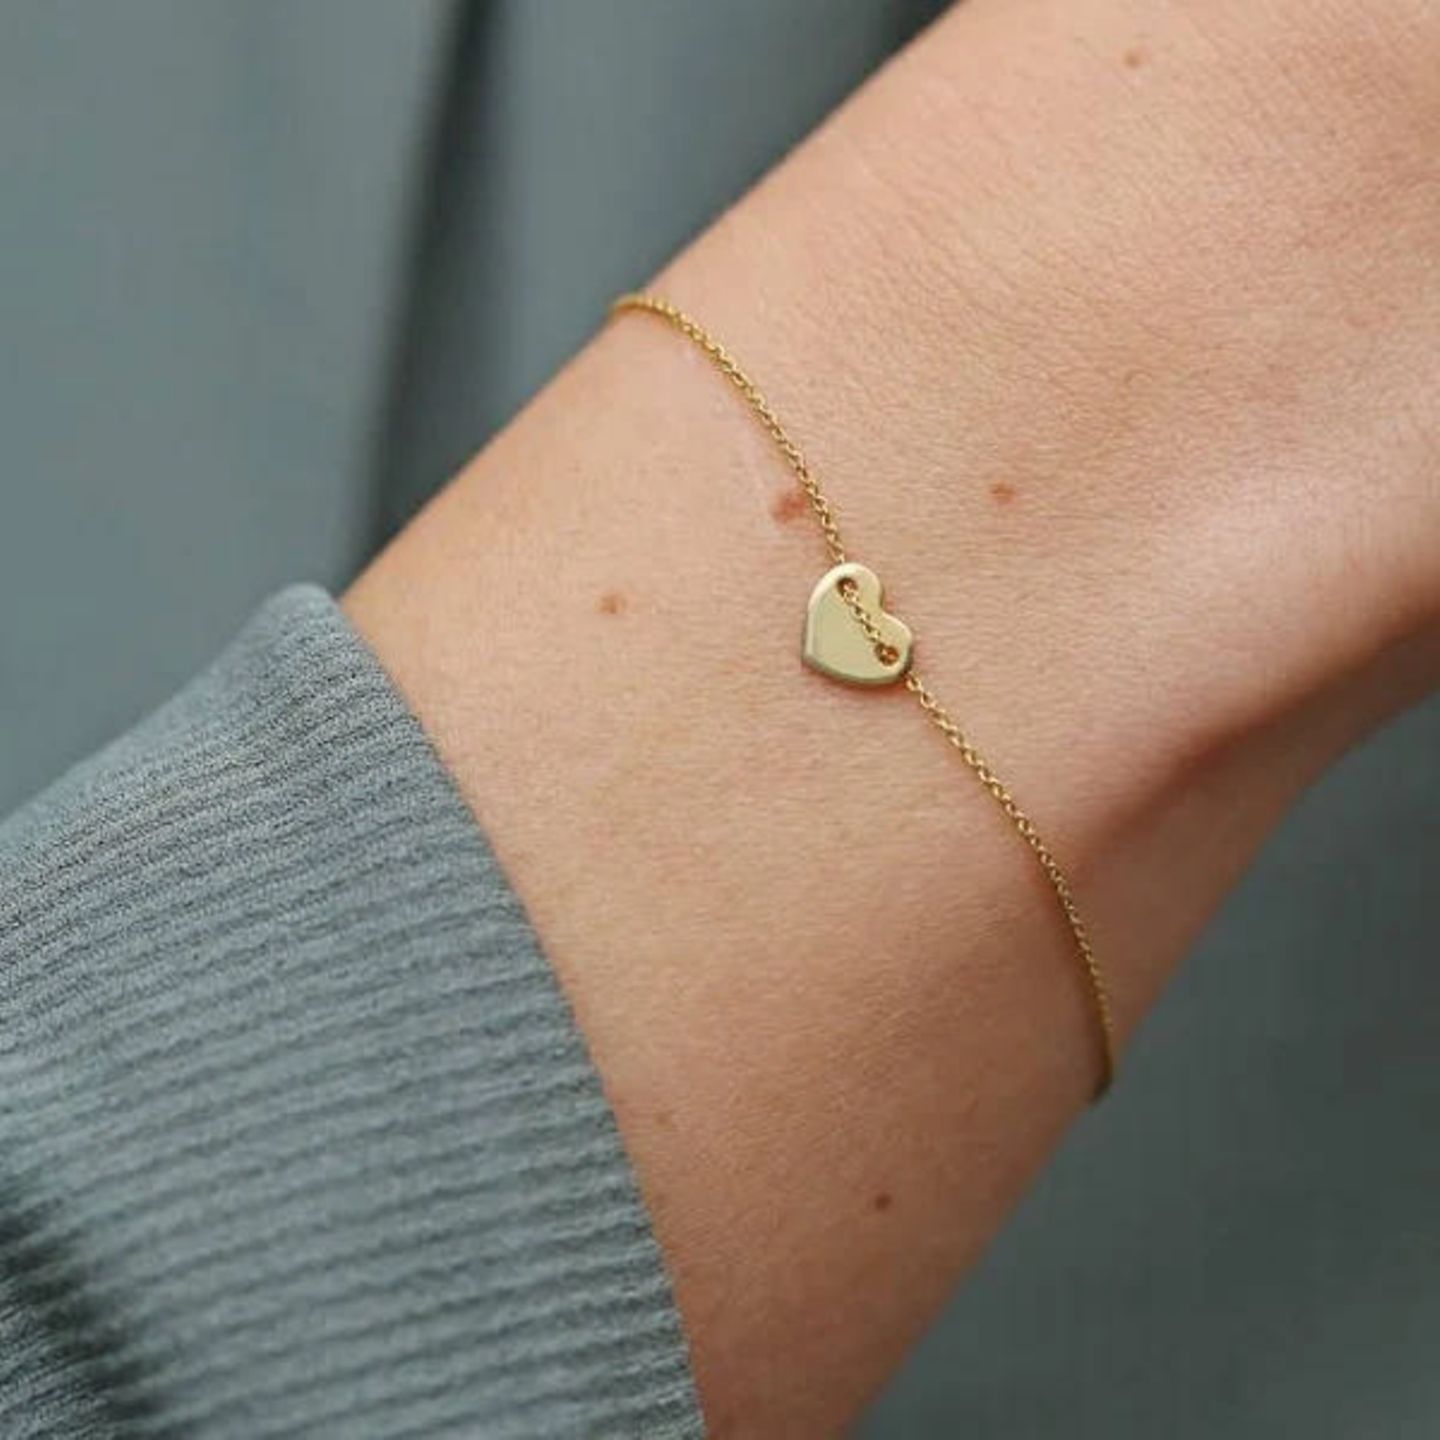 Herz aus Gold: Wenn du deiner Mutter in diesem Jahr einen ganz besonderen Dank aussprechen möchtest, könnte dieses niedliche Armband passend sein. Du kannst es gravieren und so zu einem noch persönlicheren Geschenk werden lassen. Das limitierte Hati-Armband von The Siss Bliss kannst du für 199 Euro nachshoppen. 